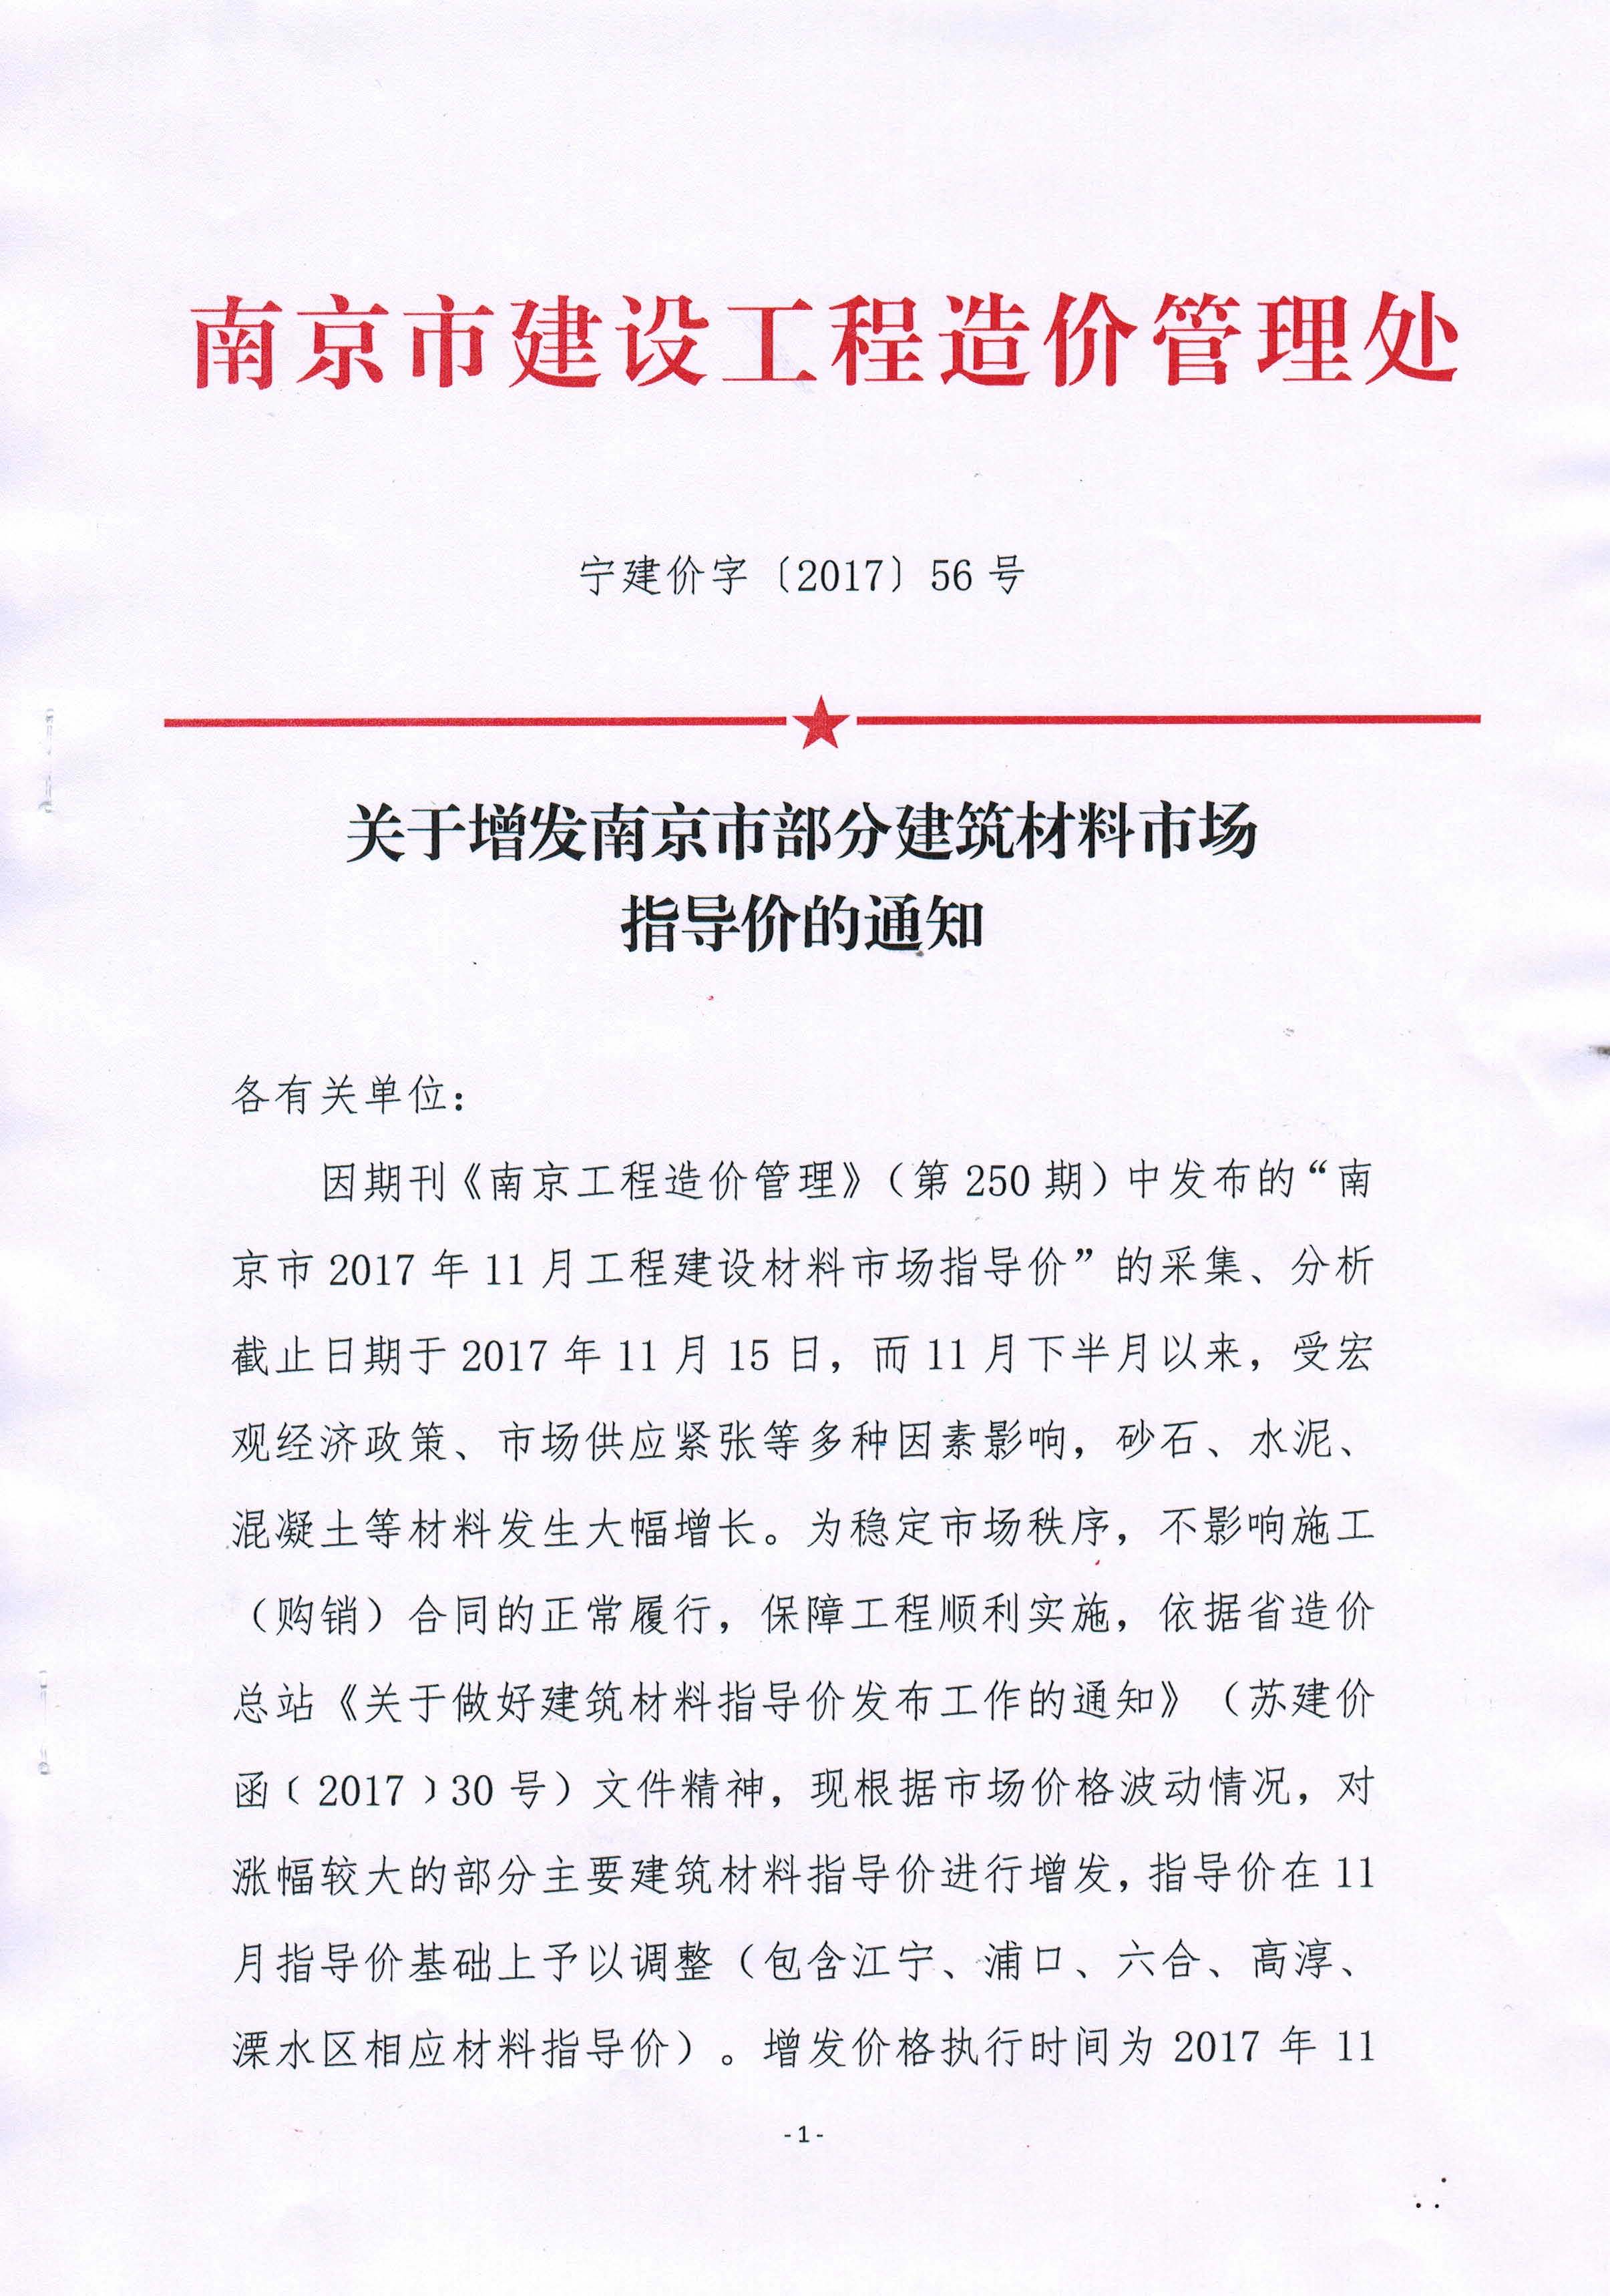 關于增發南京市部分材料市場指導價的通知